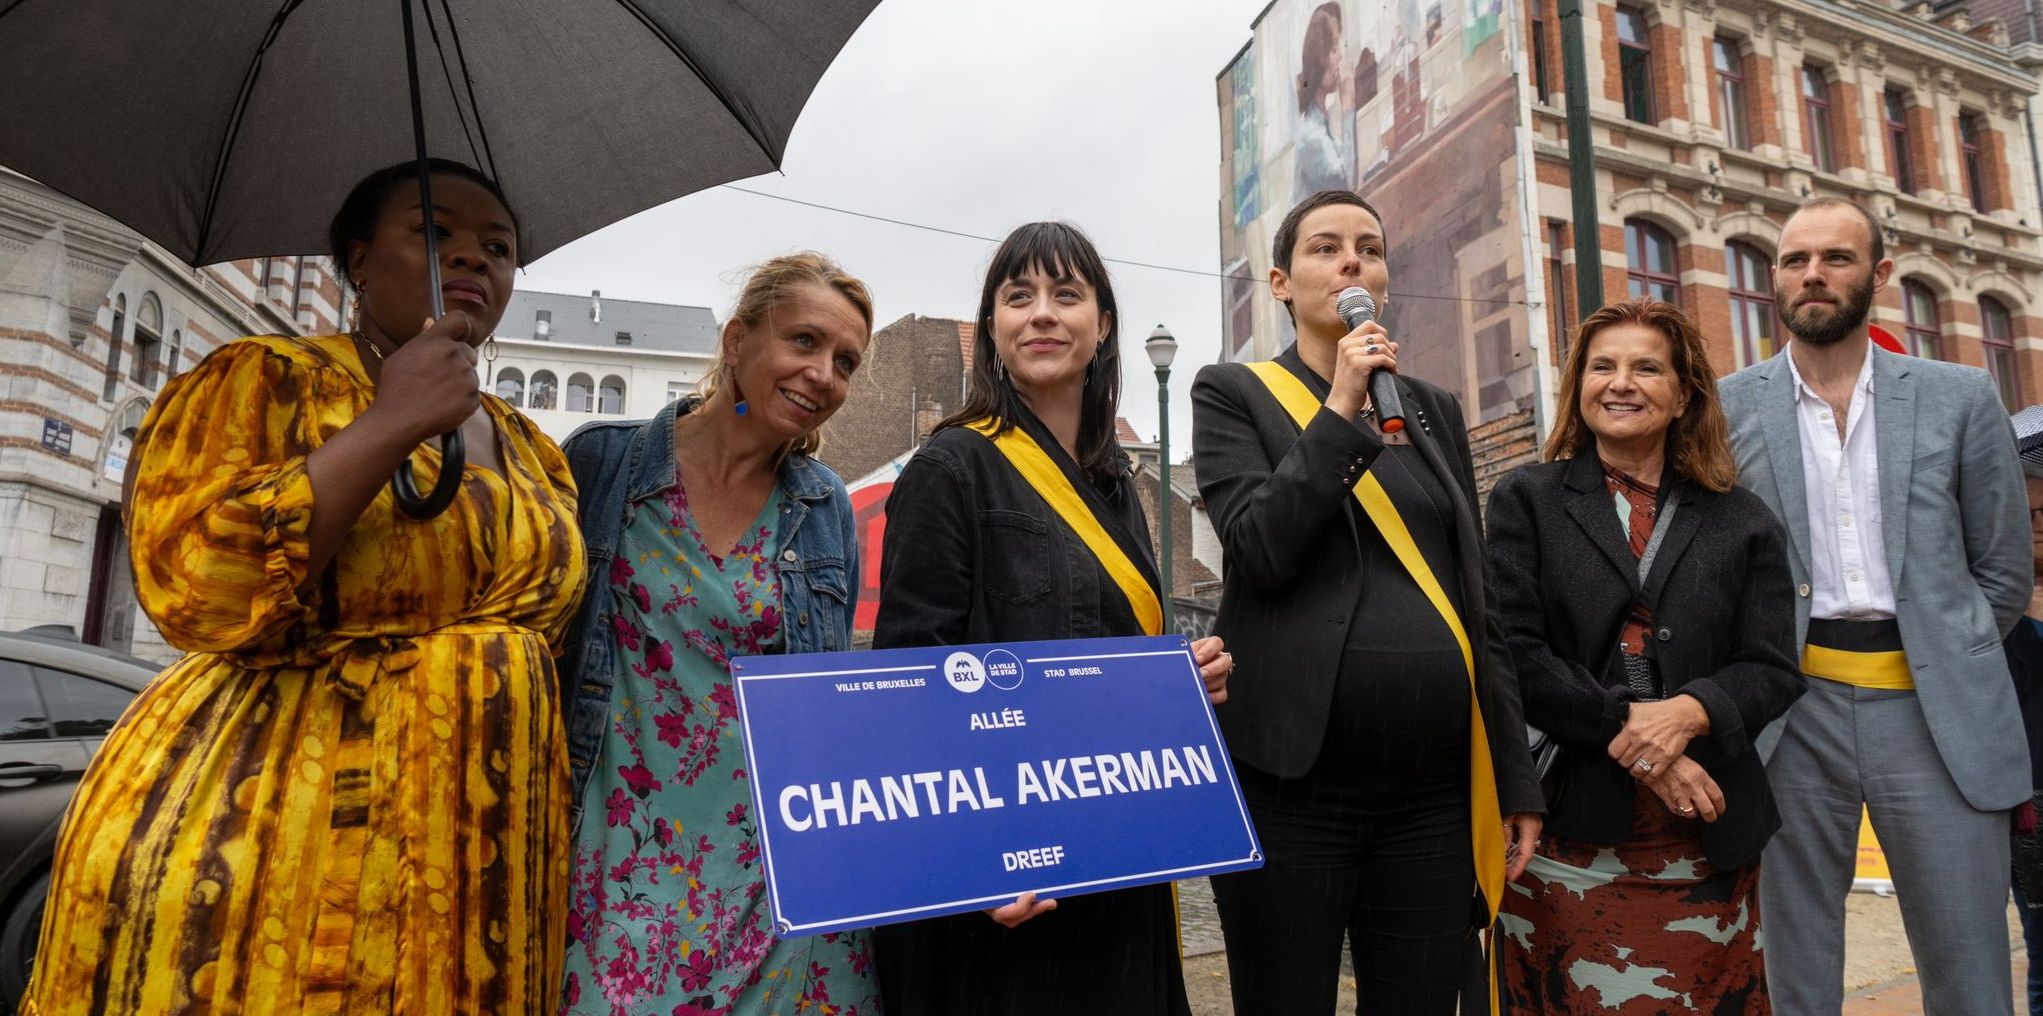 Focus op Chantal Akerman
De Stad Brussel eert Belgische filmmaakster met een fresco en een dreef